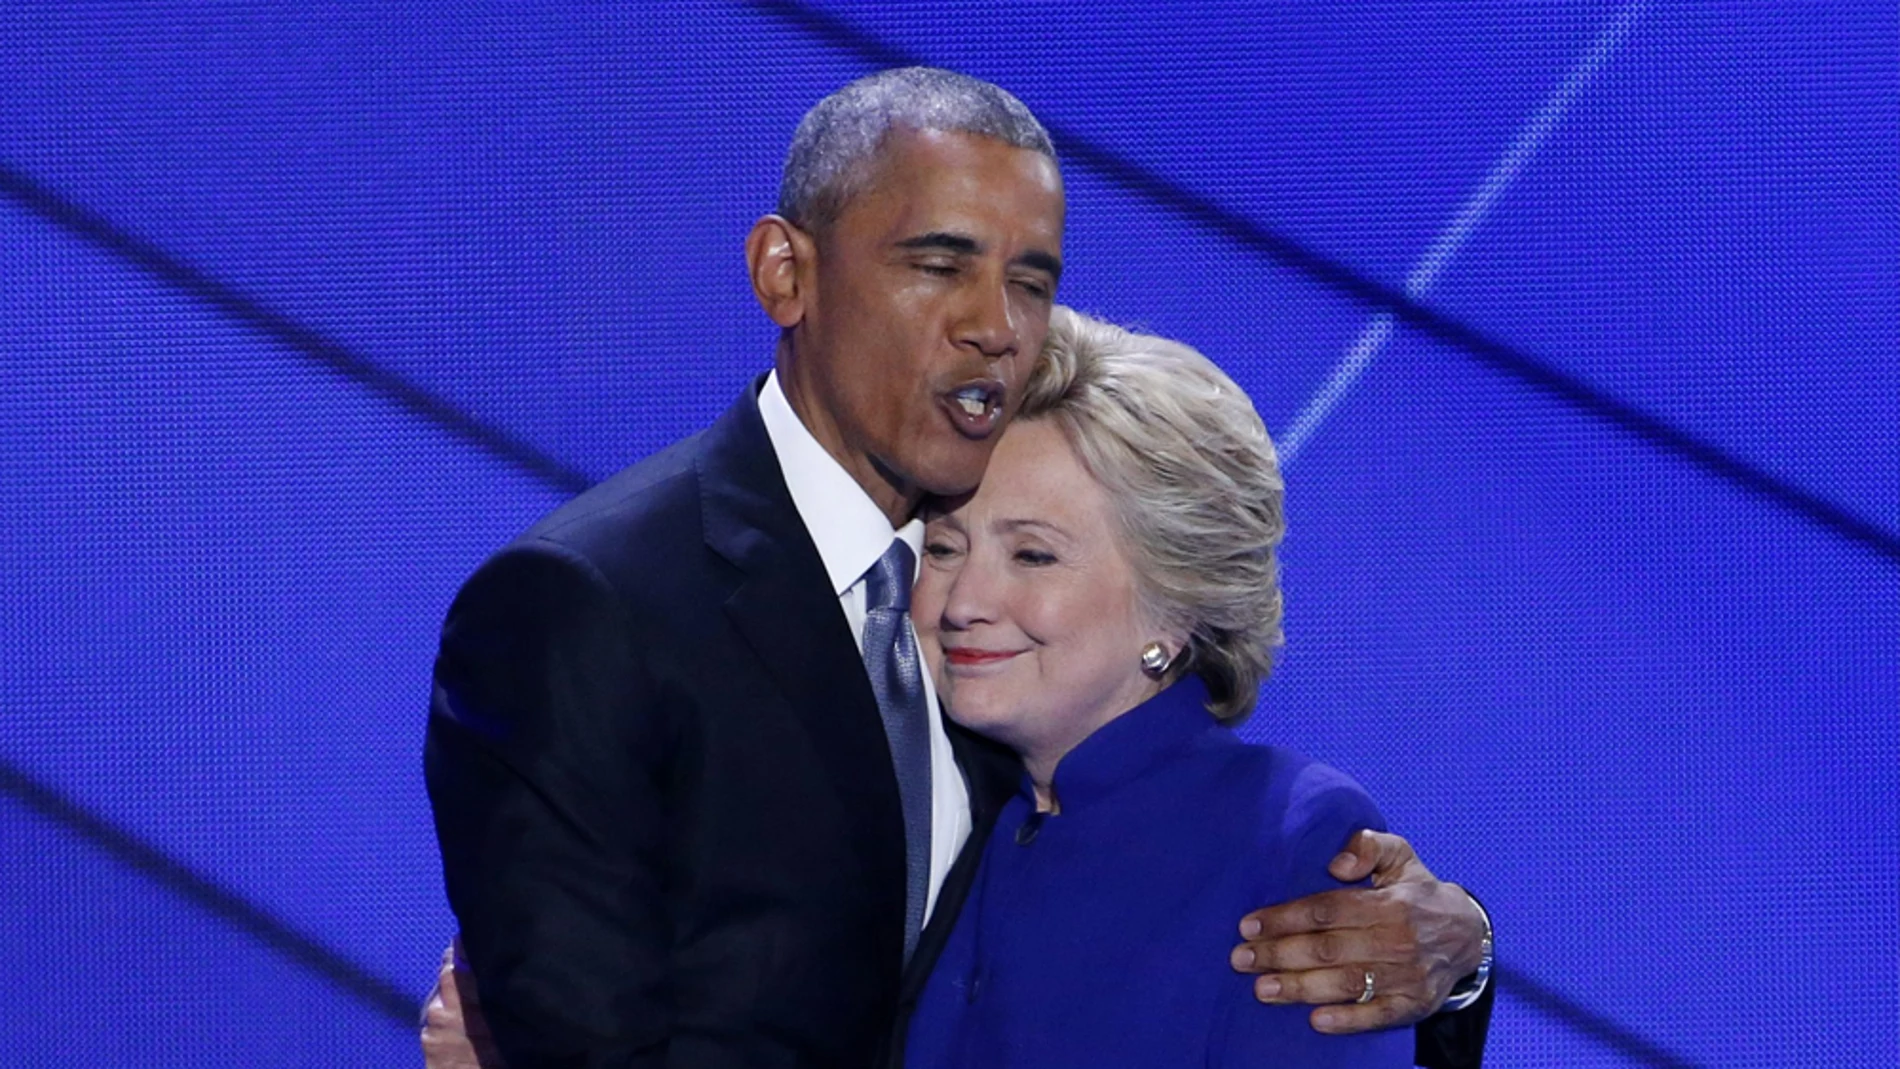 Obama y Hillary Clinton